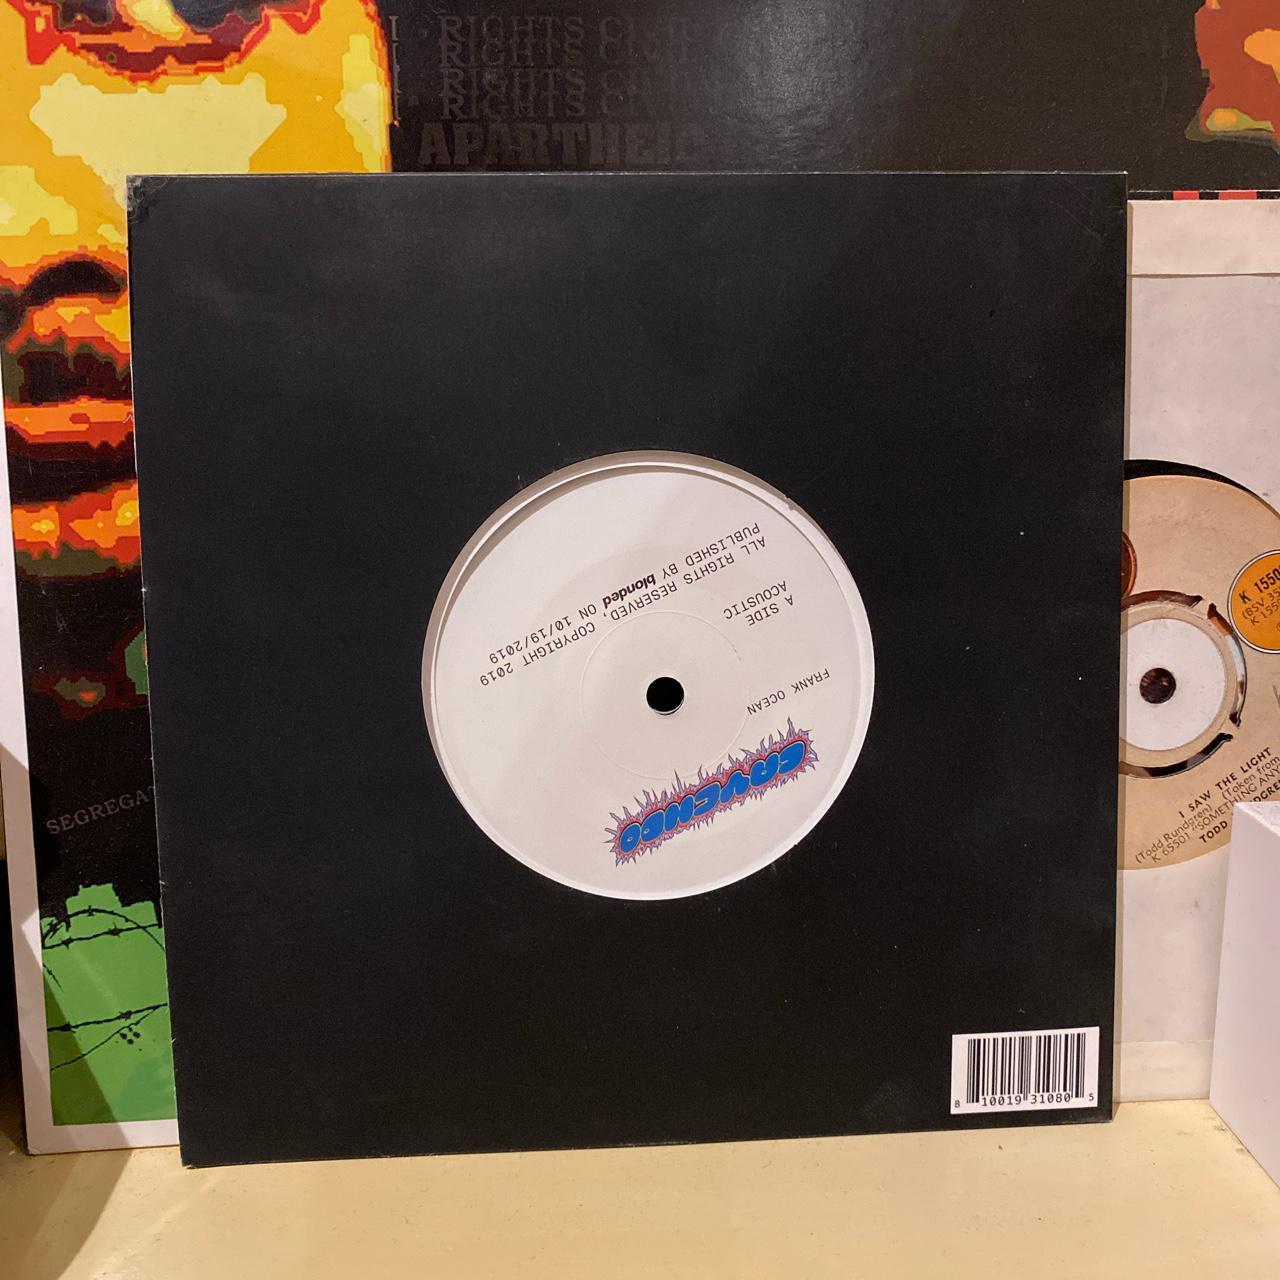 Rare Frank ocean Cayendo 7” vinyl Includes... - Depop